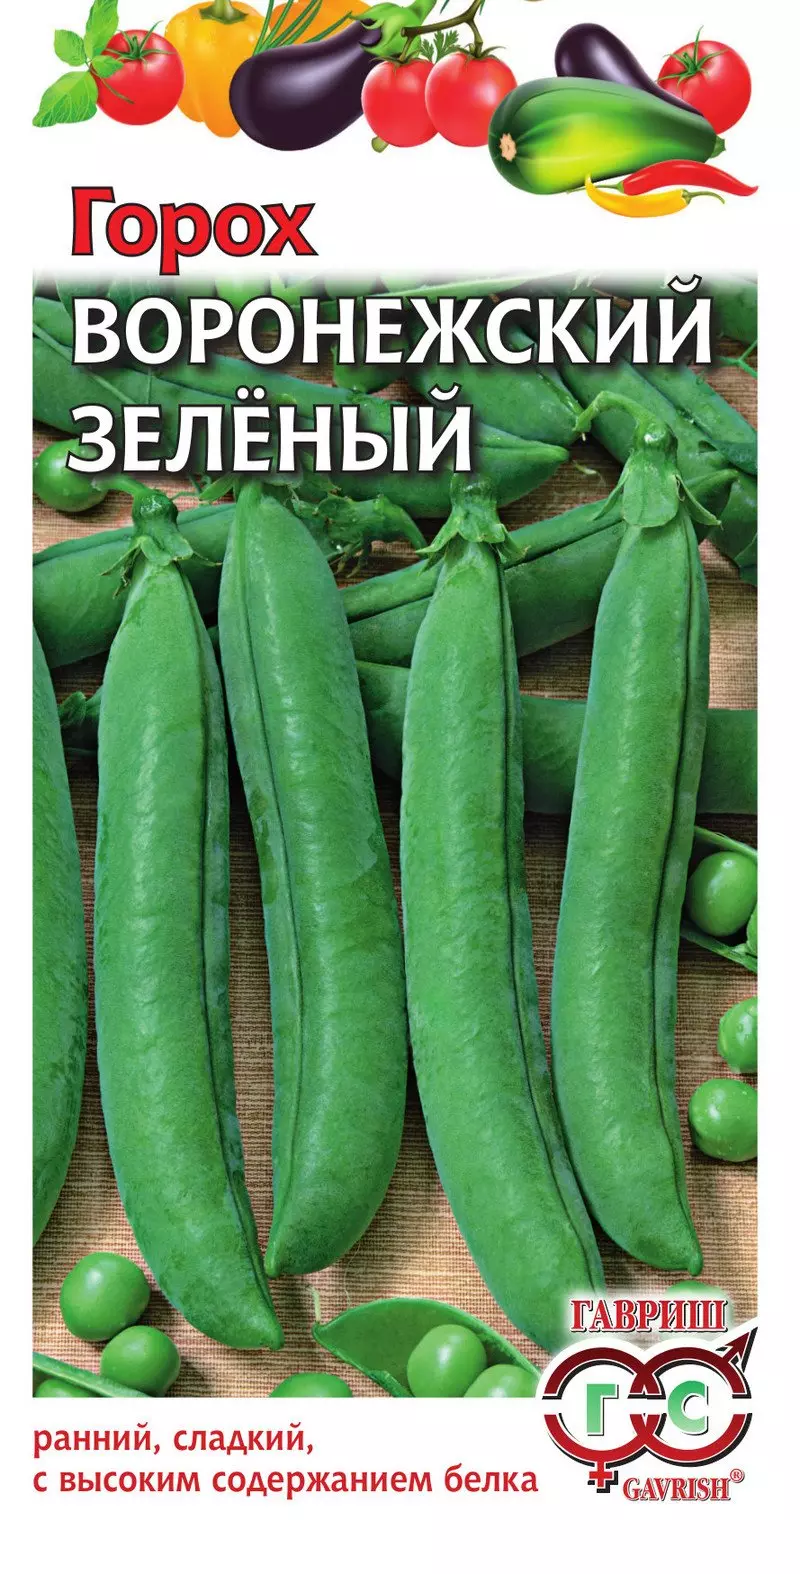 Семена Горох Воронежский зеленый 10г (Гавриш) цв